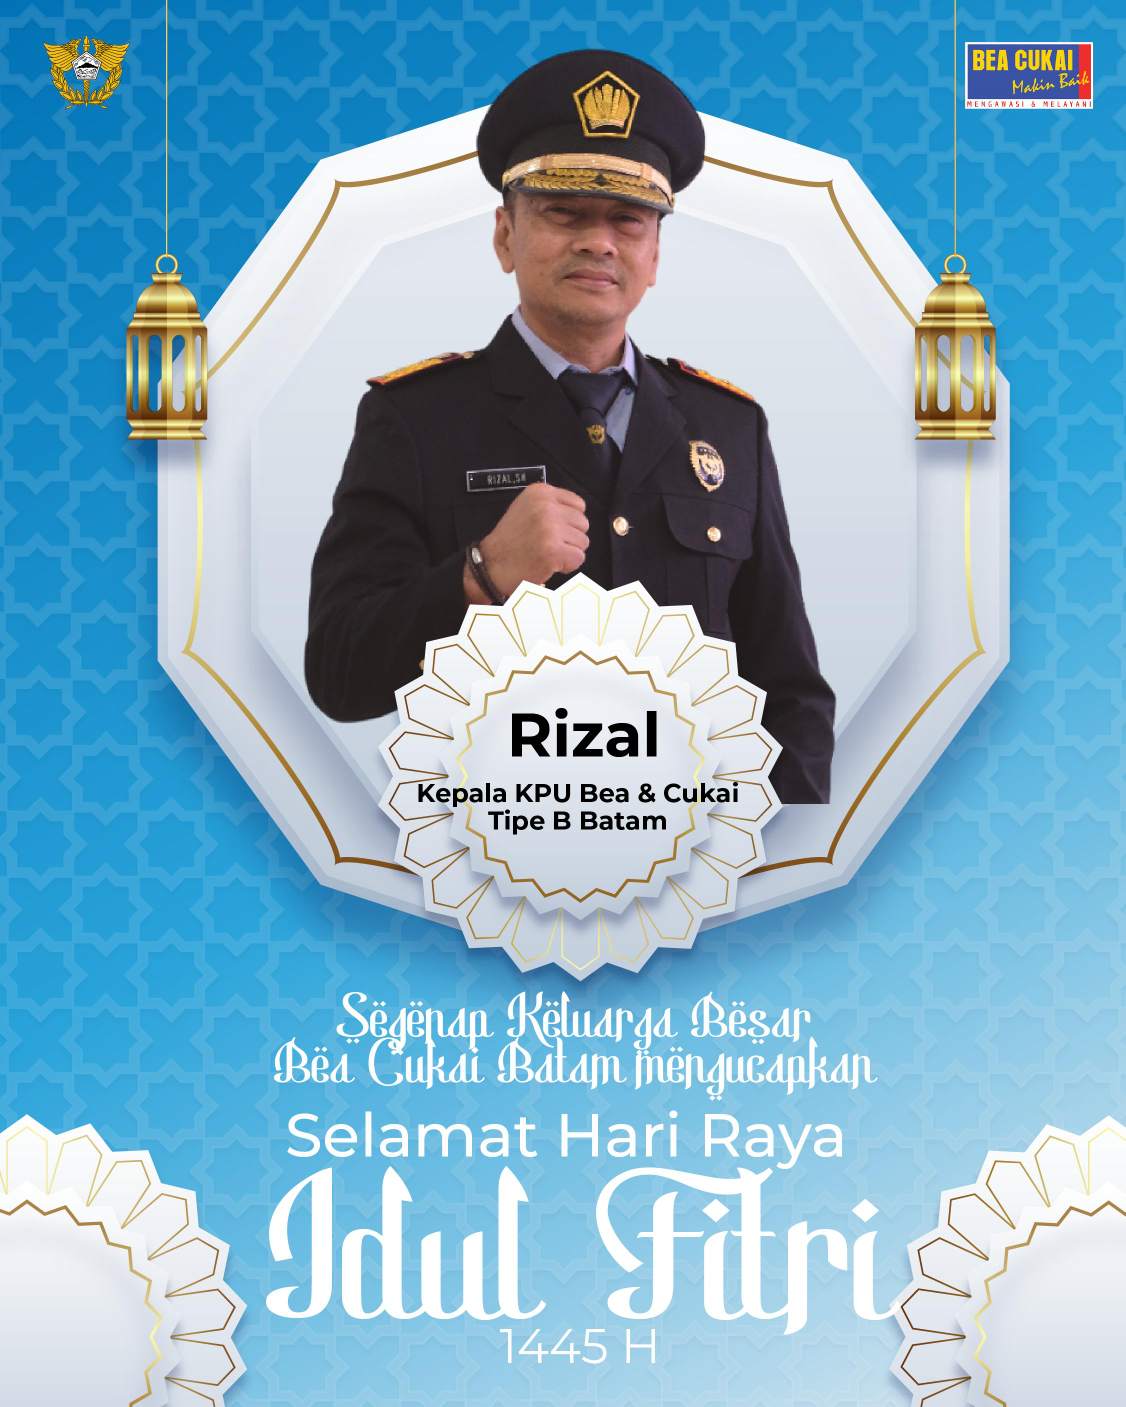 Kepala KPU Bea & Cukai Tipe B Batam Rizal Ucapkan Selamat Hari Raya Idul Fitri 1445 H